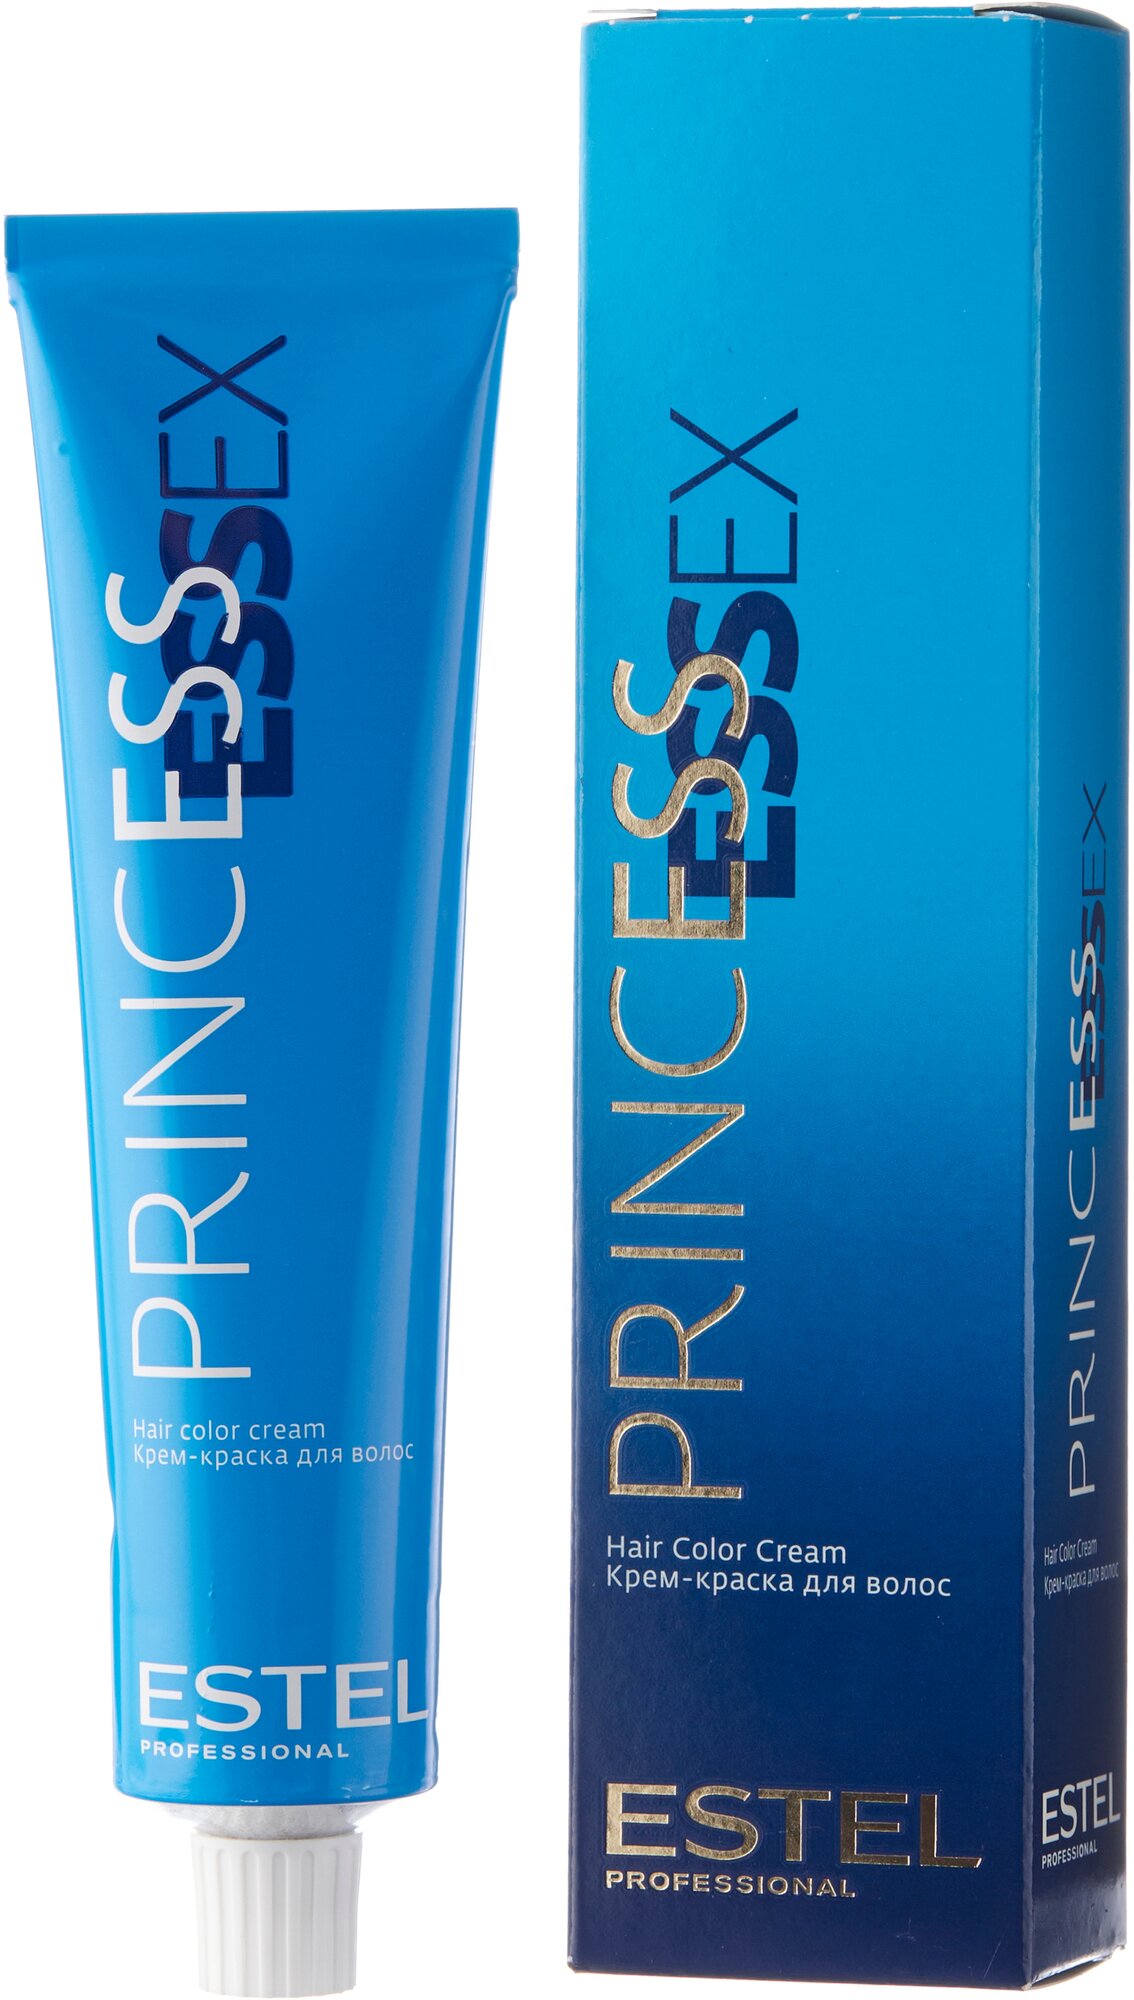 ESTEL Princess Essex крем-краска для волос